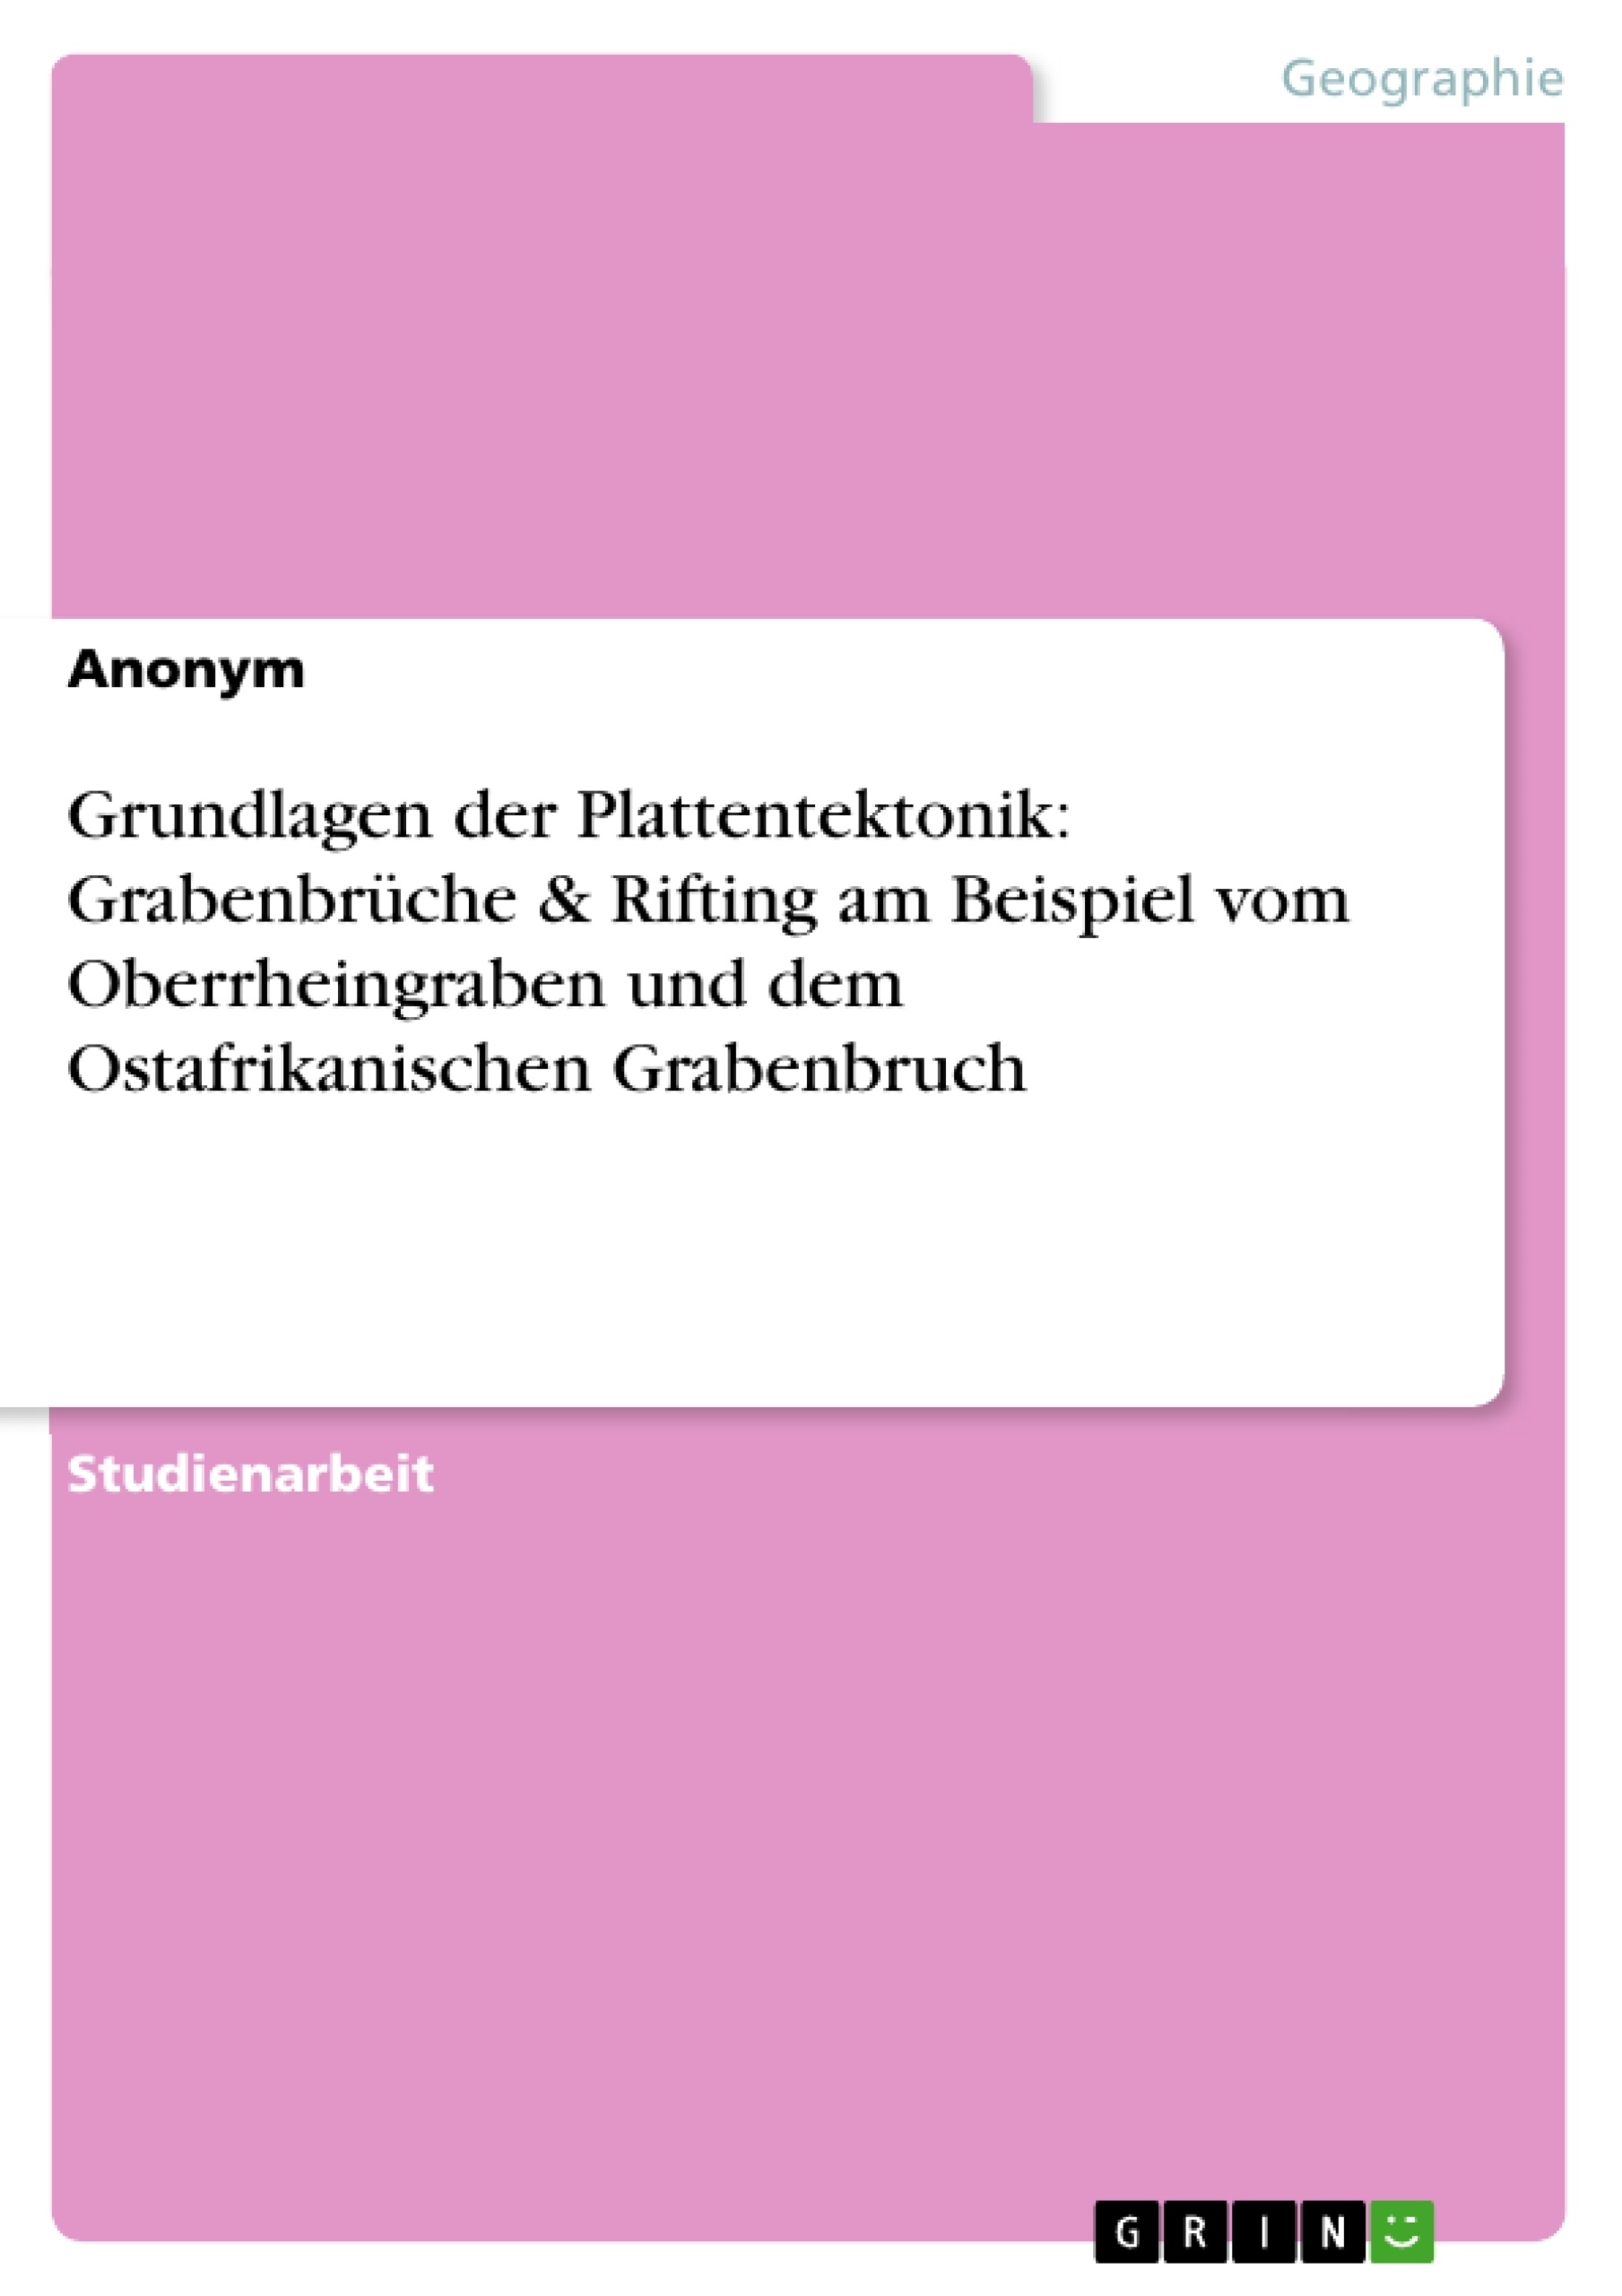 Title: Grundlagen der Plattentektonik: Grabenbrüche & Rifting am Beispiel vom Oberrheingraben und dem Ostafrikanischen Grabenbruch